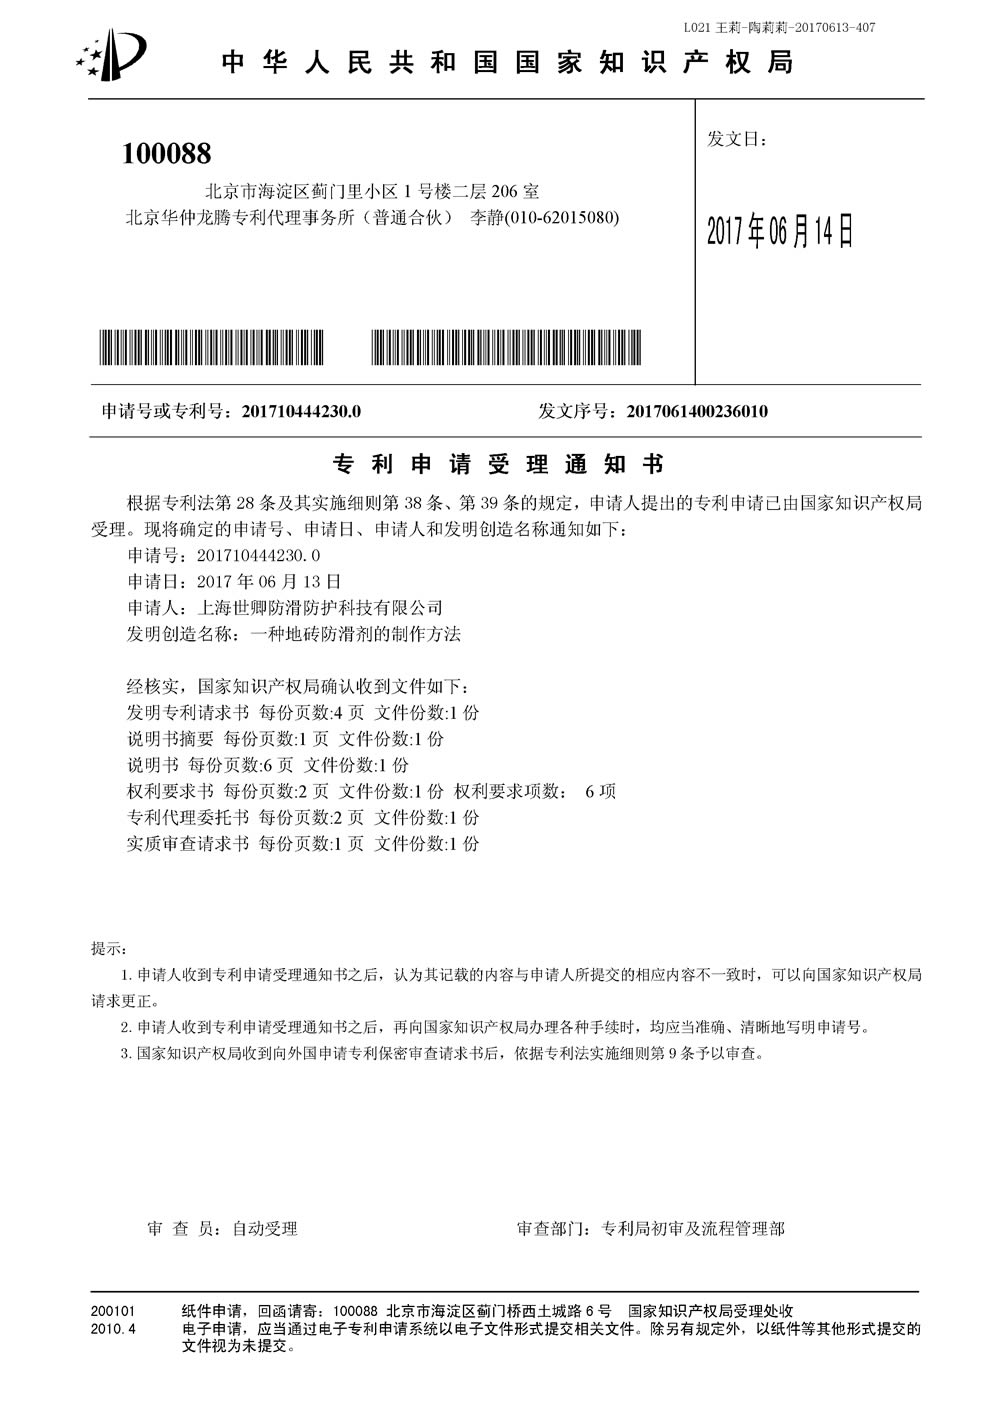 上海世卿防滑液发明专利审查合格证书